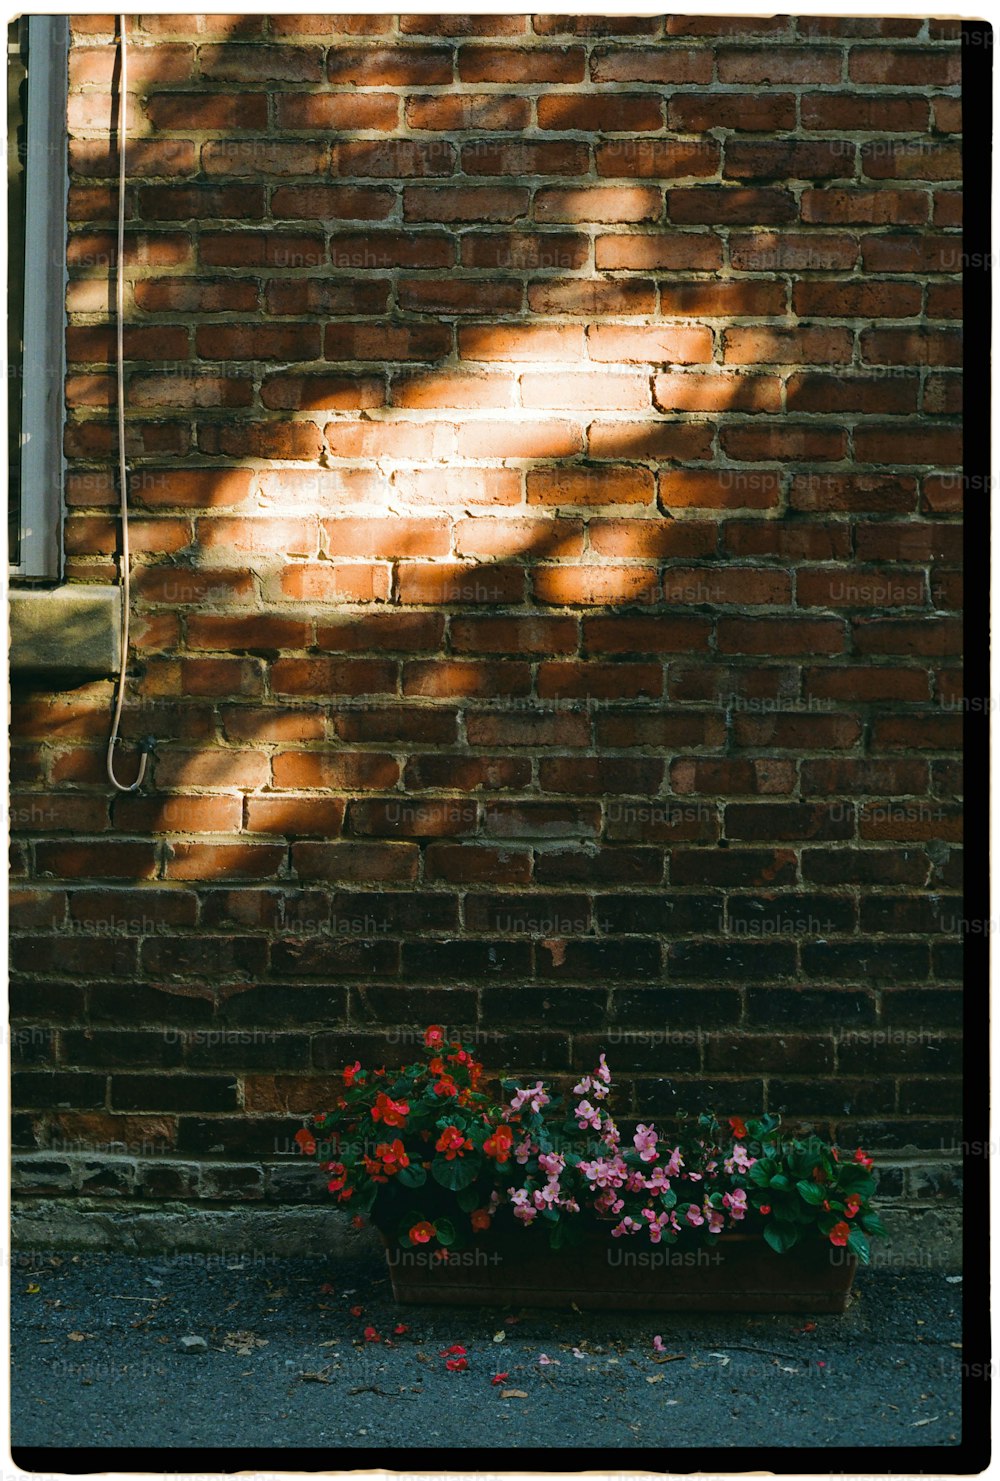 eine Backsteinmauer mit einem Blumentopf